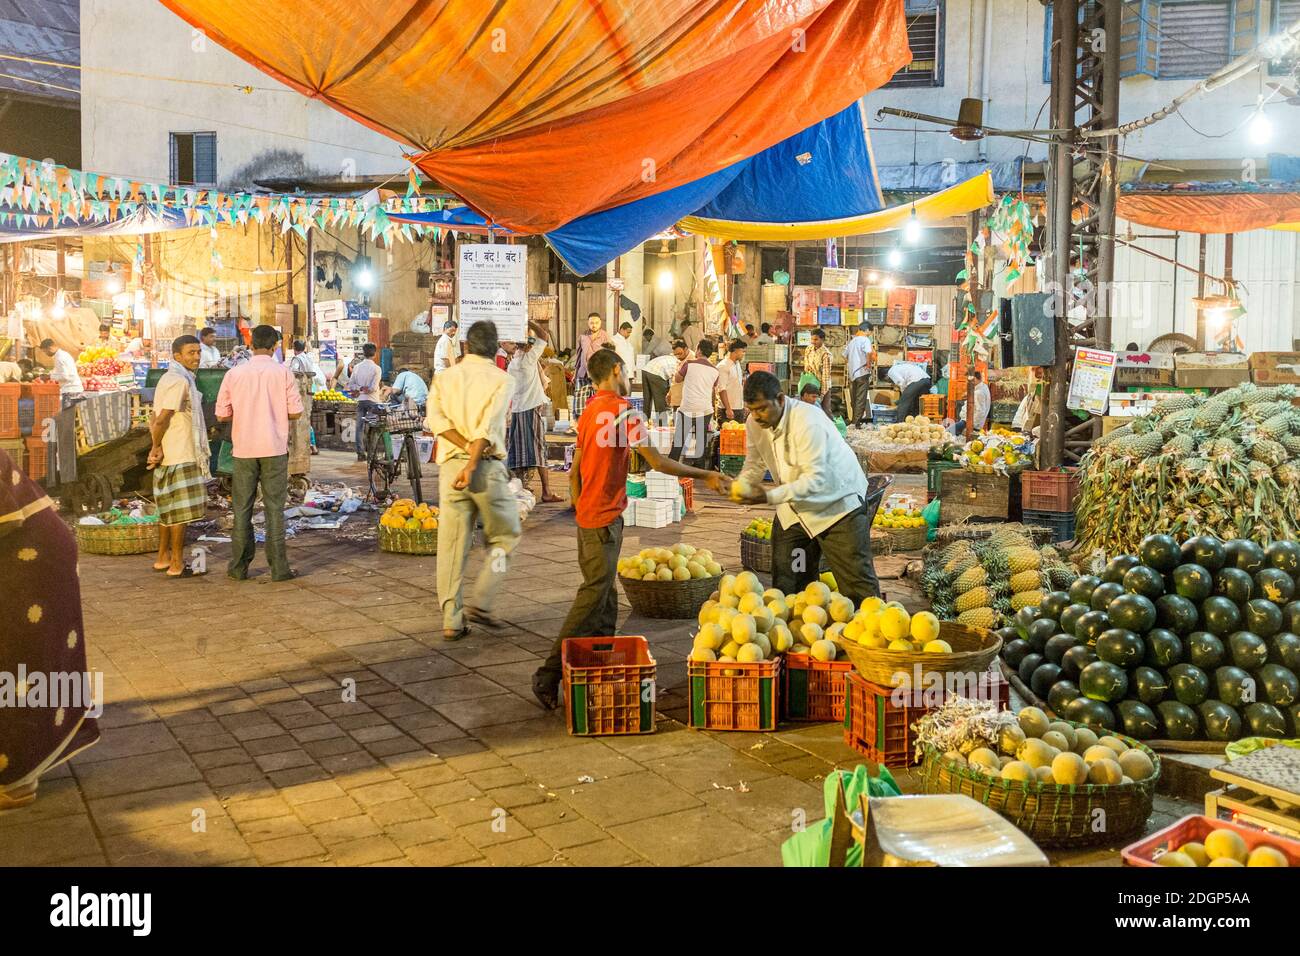 Crawford Market, ahora llamado Mahatma Jyotiba Phule Mandai, es un mercado popular en el sur de Mumbai para comprar productos y bienes para el hogar. Foto de stock